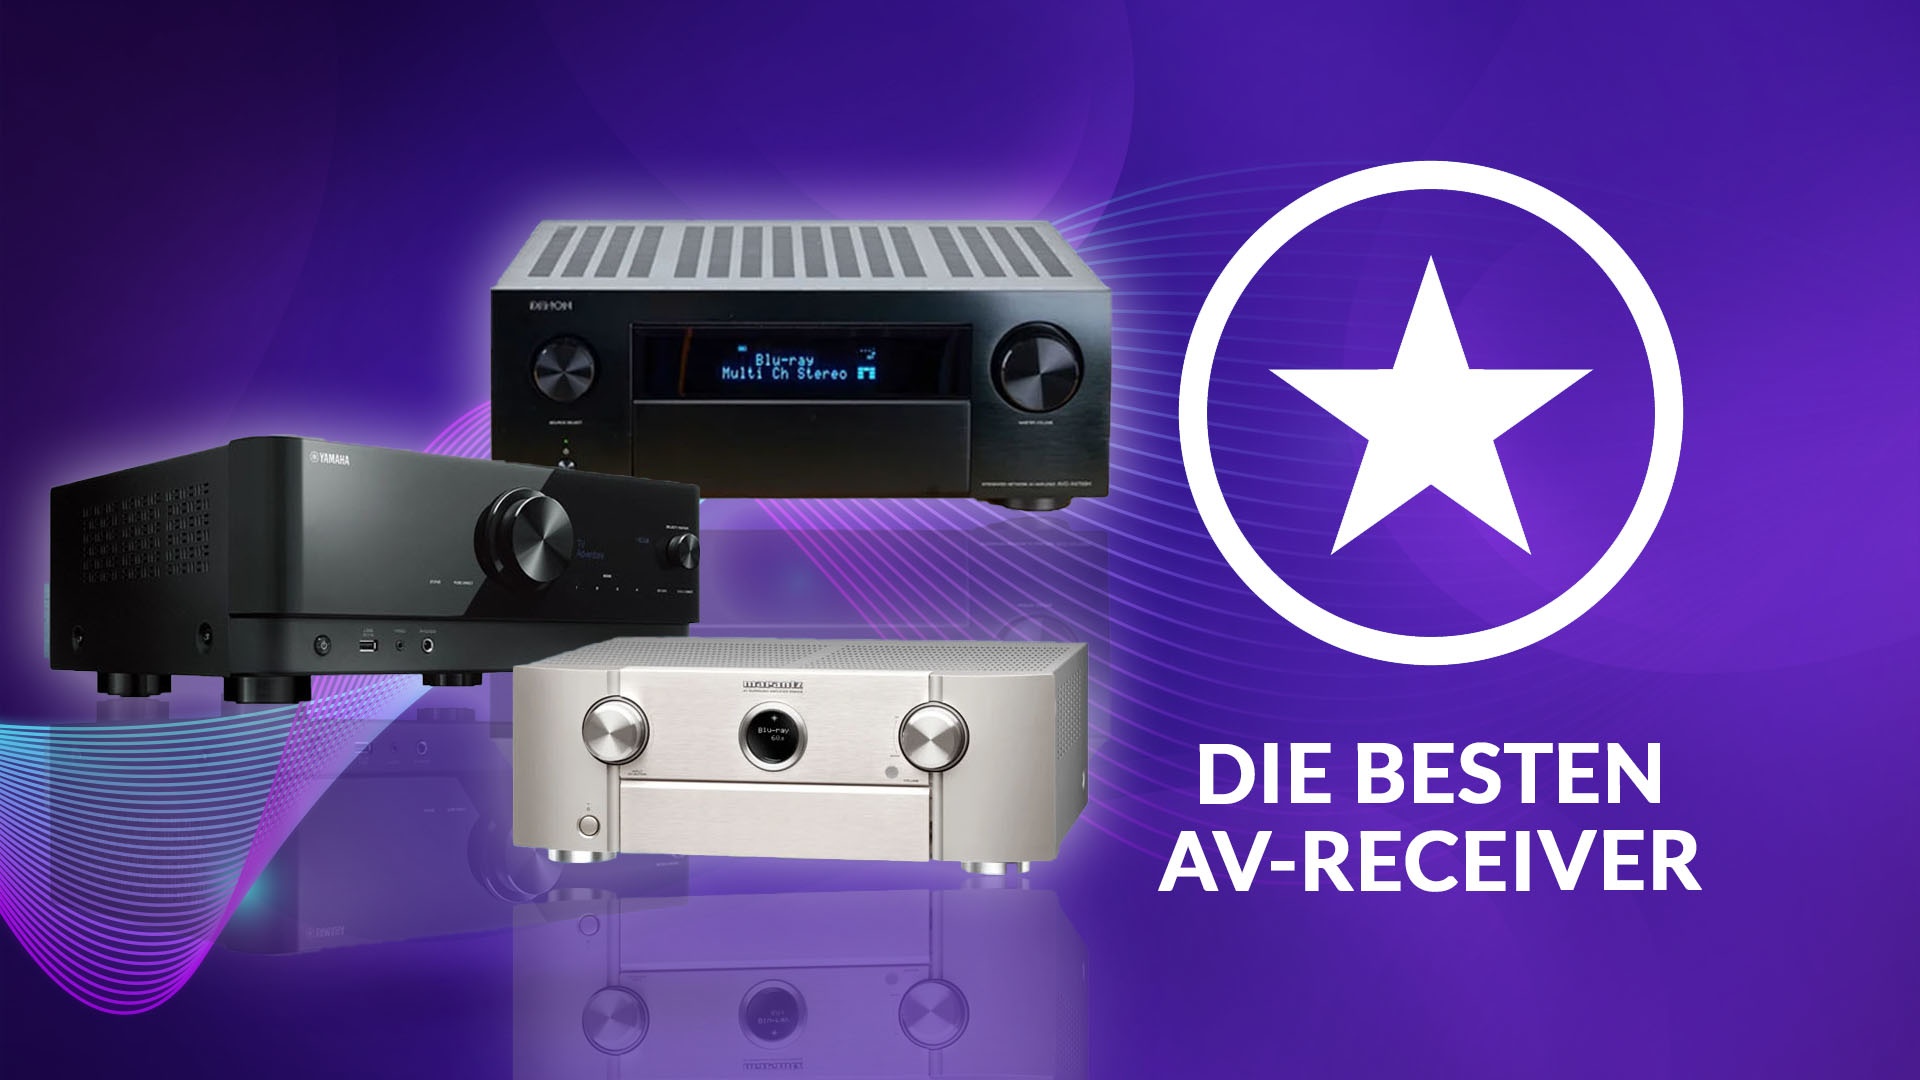 Die besten AV-Receiver für dein Heimkino: Unsere AVR Empfehlungen von Denon bis Yamaha